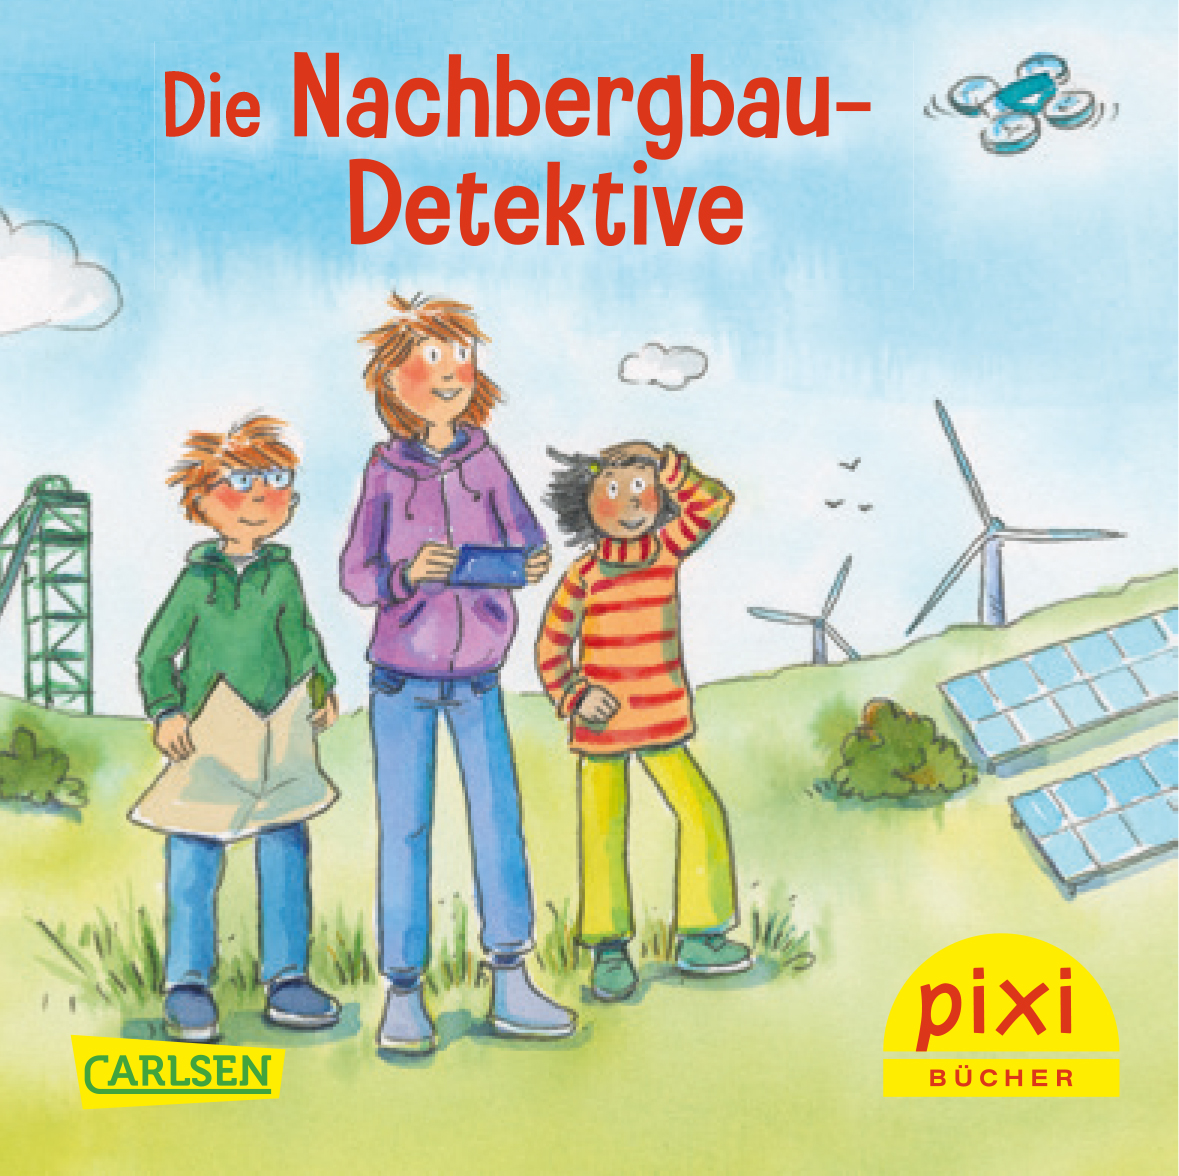 Cover des Pixi-Buchs